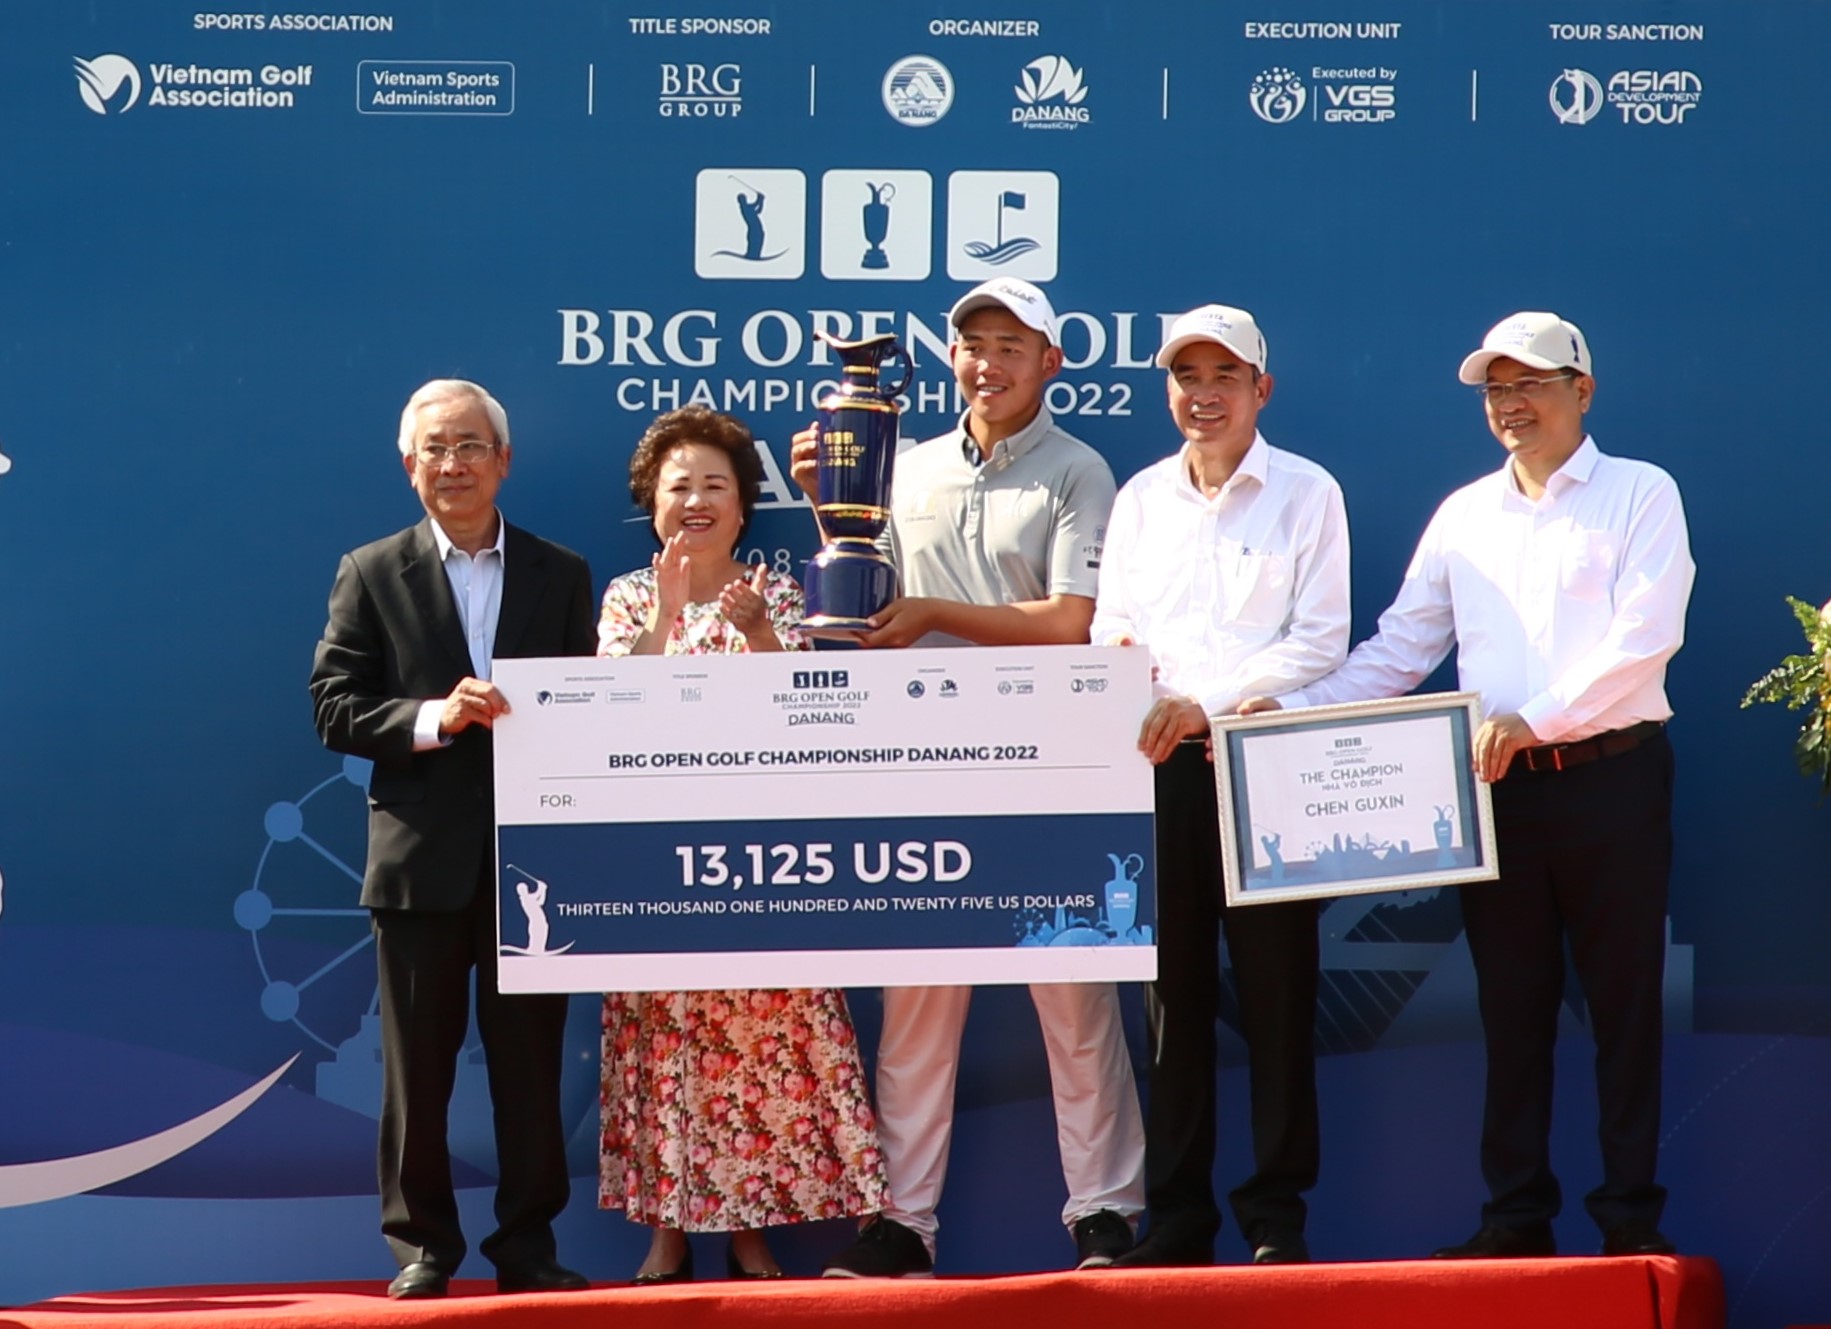 Gôn thủ người Trung Quốc, Chen Guxin đăng quang giải đấu BRG Open Golf Championship Danang 2022